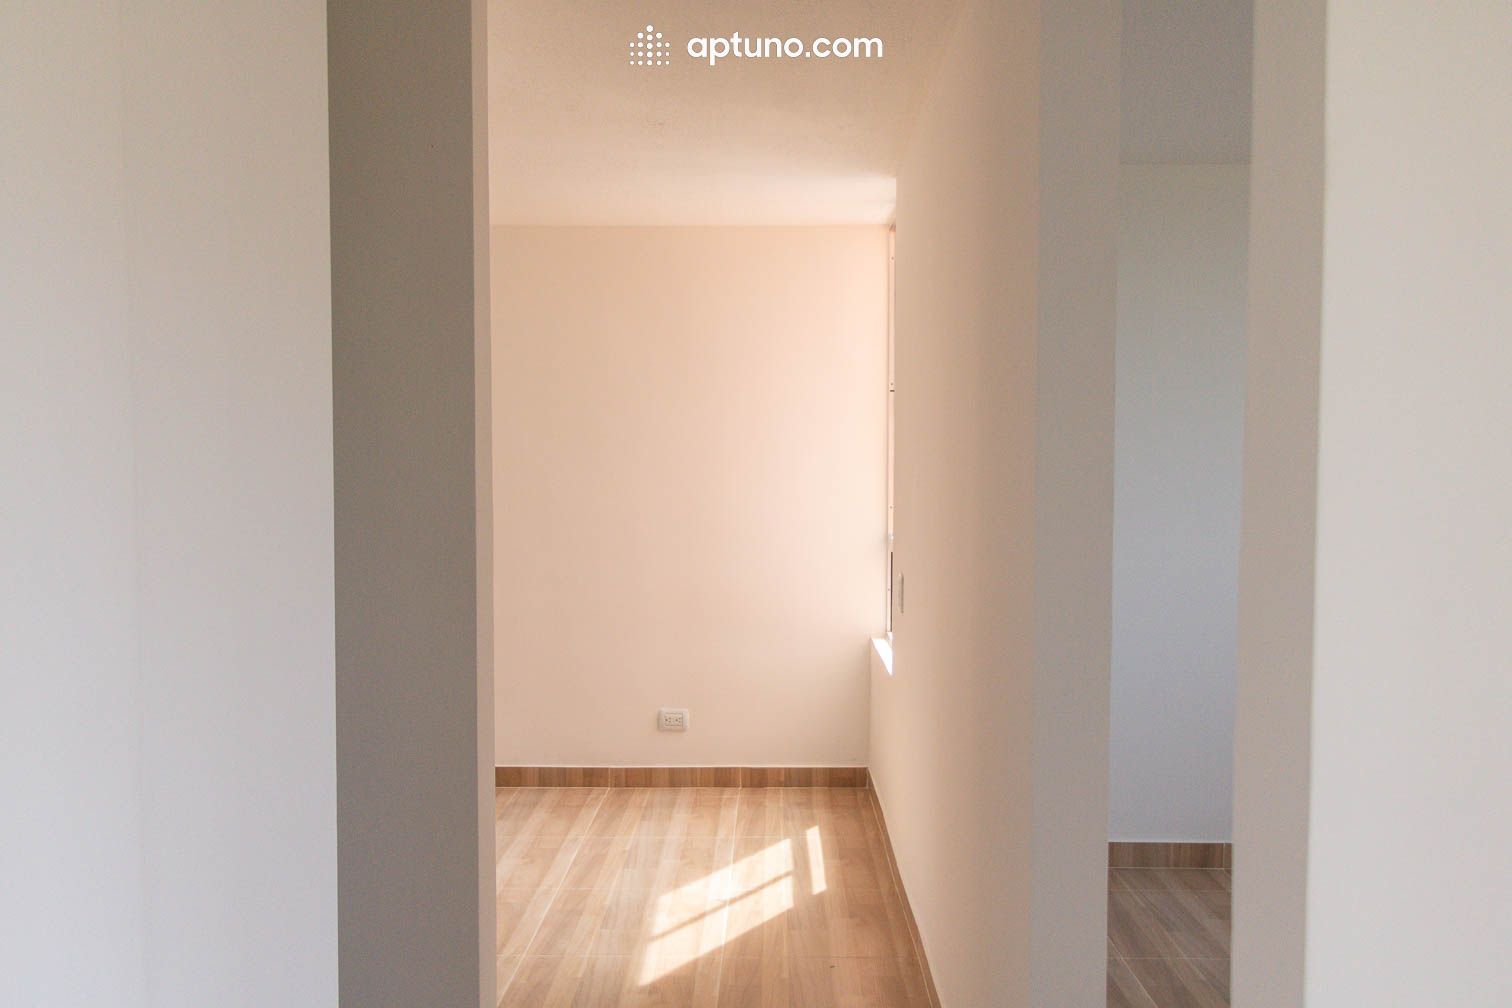 Apartamento en arriendo Corregimiento Norte 47 m² - $ 700.000,00